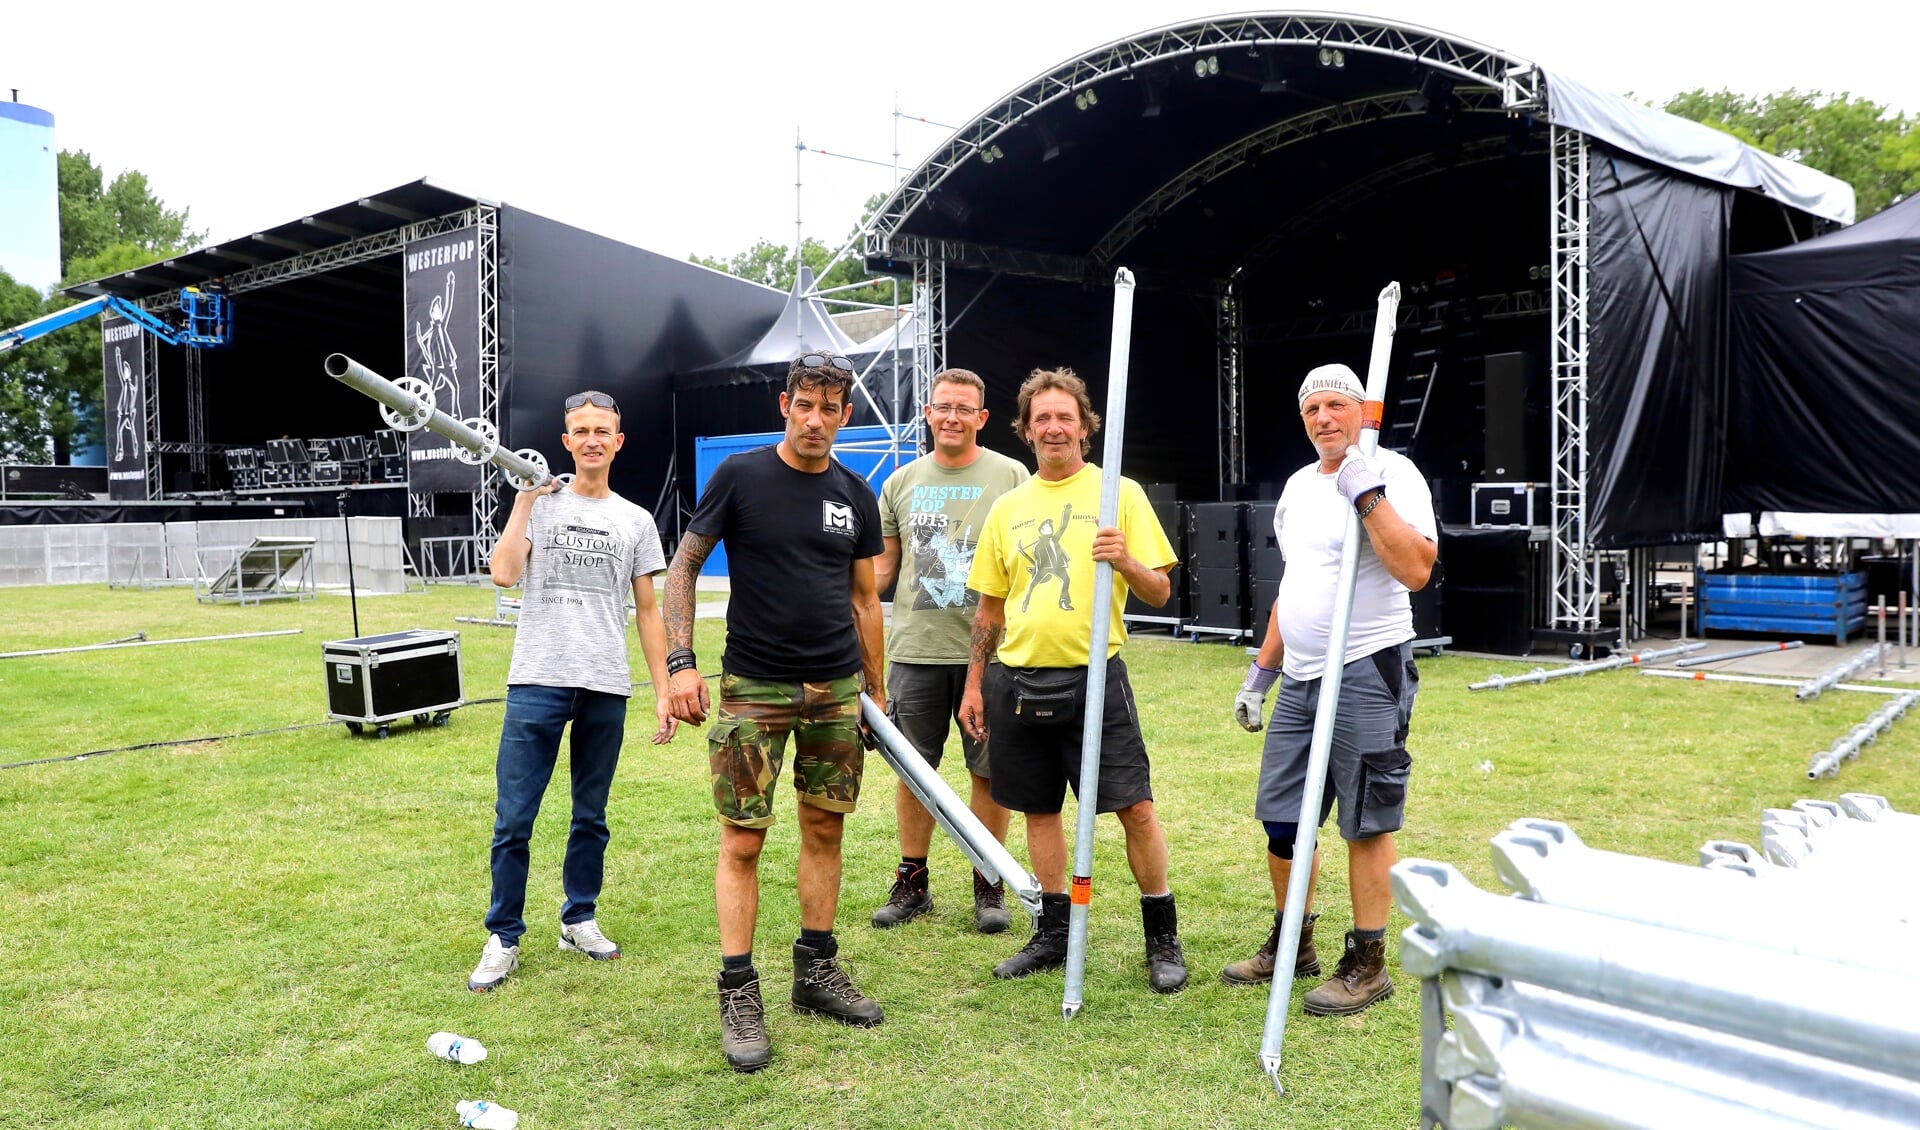 Vijf hardwerkende vrijwilligers die er mede voor zorgen dat we vanaf vrijdag 19 juli van een spetterend Westerpop kunnen genieten 